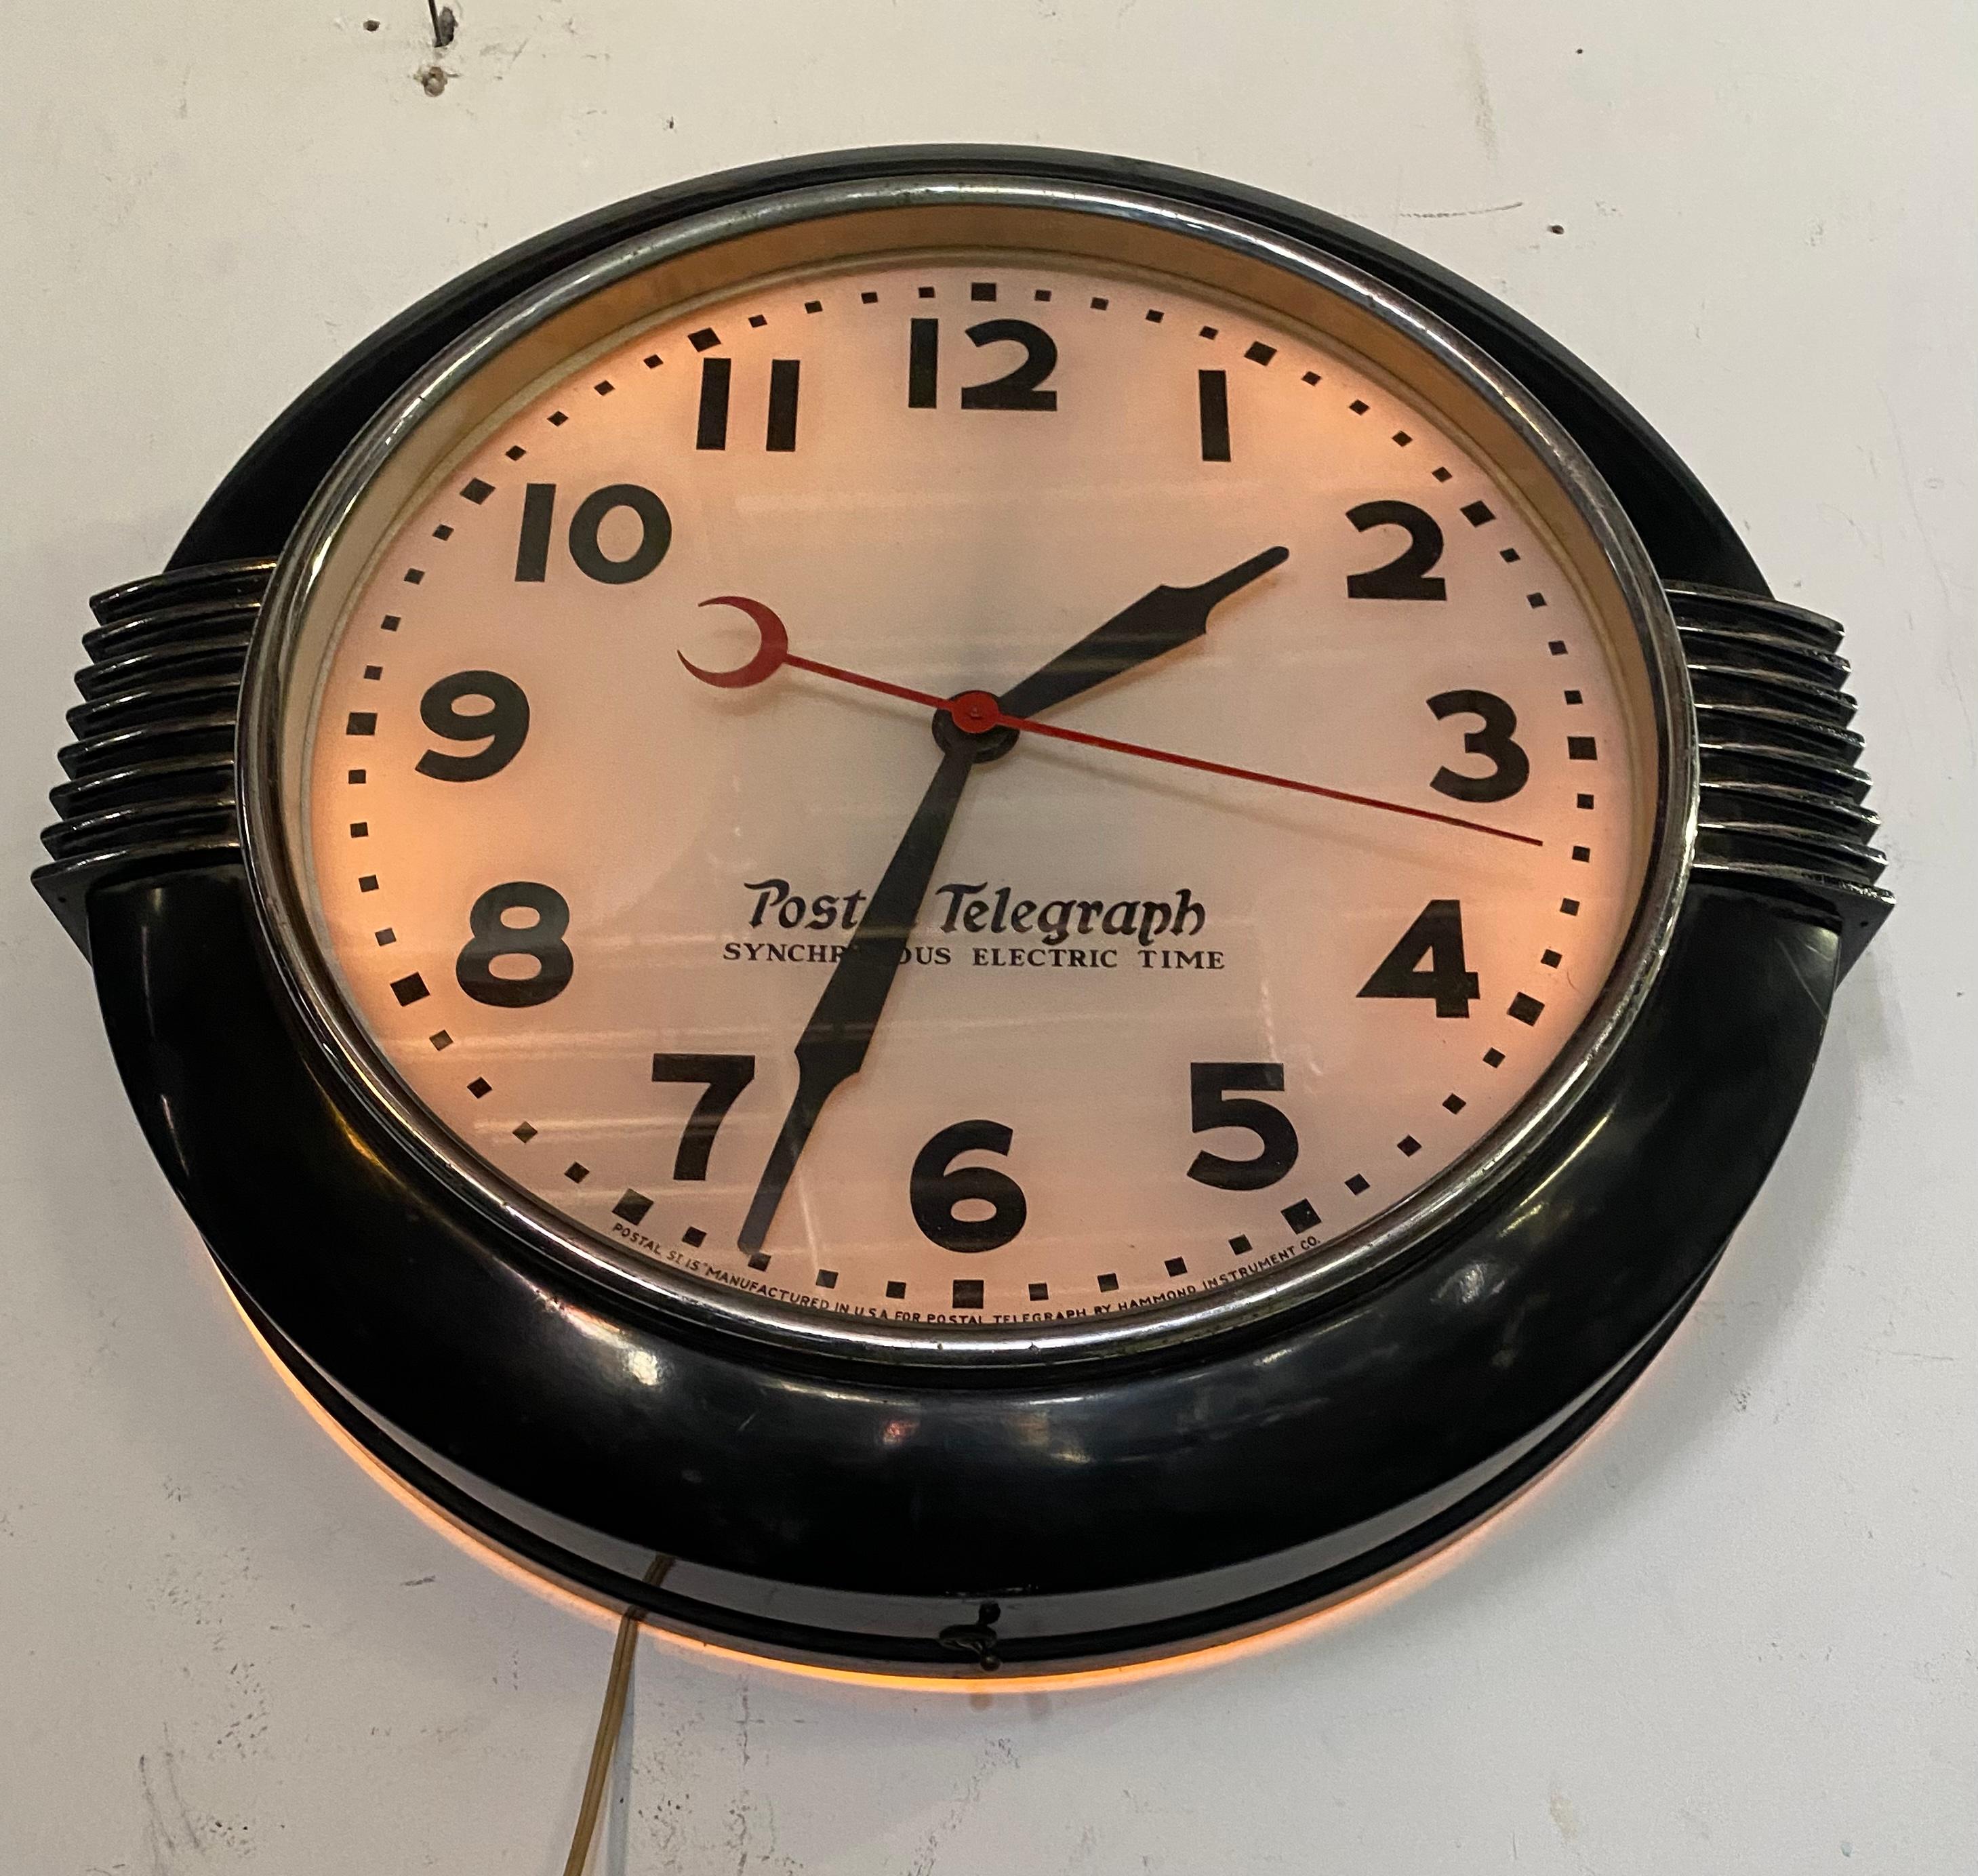 postal telegraph clock